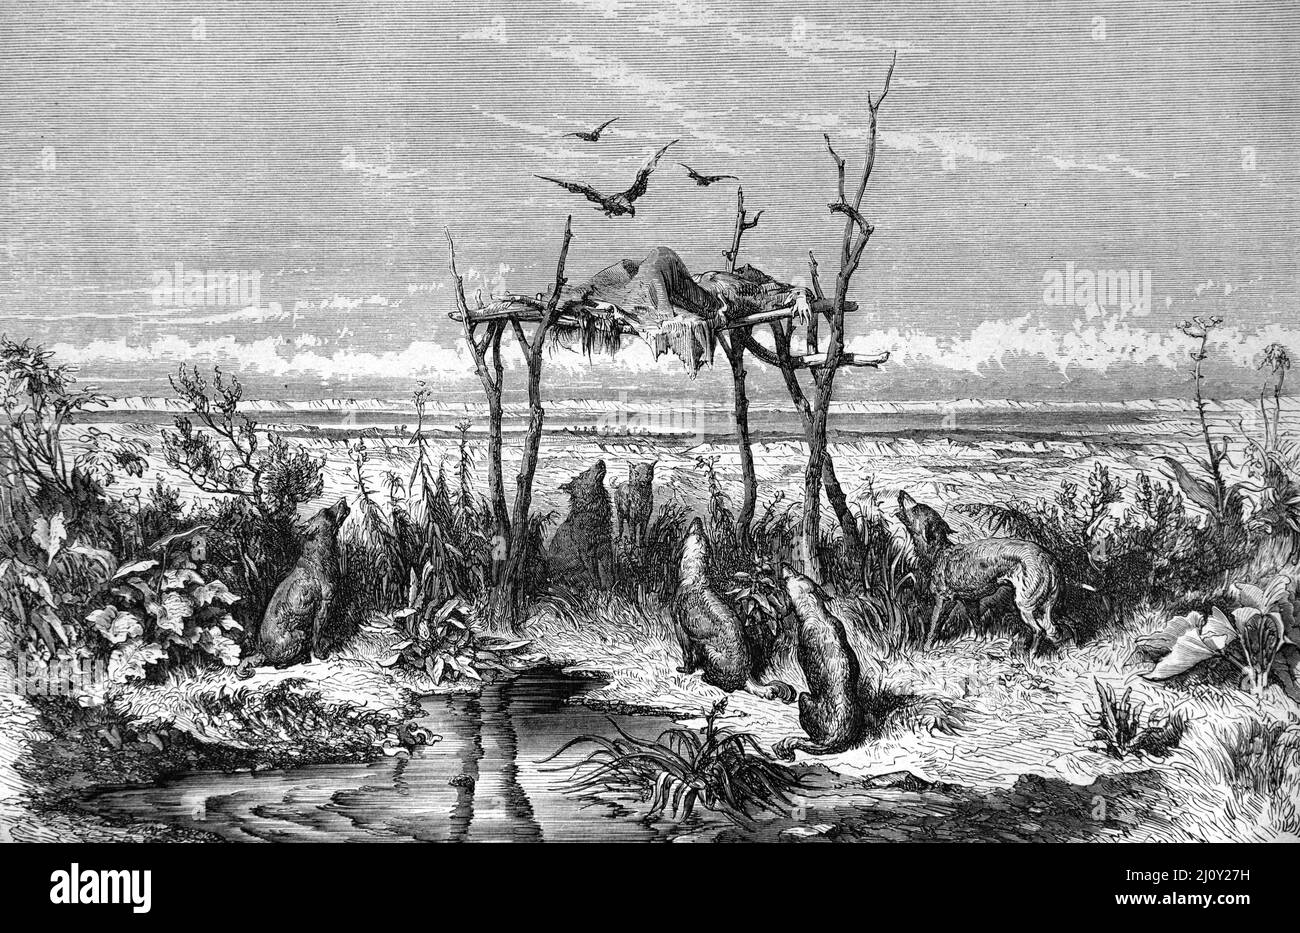 Ciel Burial ou tombes australiennes des peuples autochtones du désert ou de l'Outback de l'Australie. Illustration ancienne ou gravure 1860. Banque D'Images